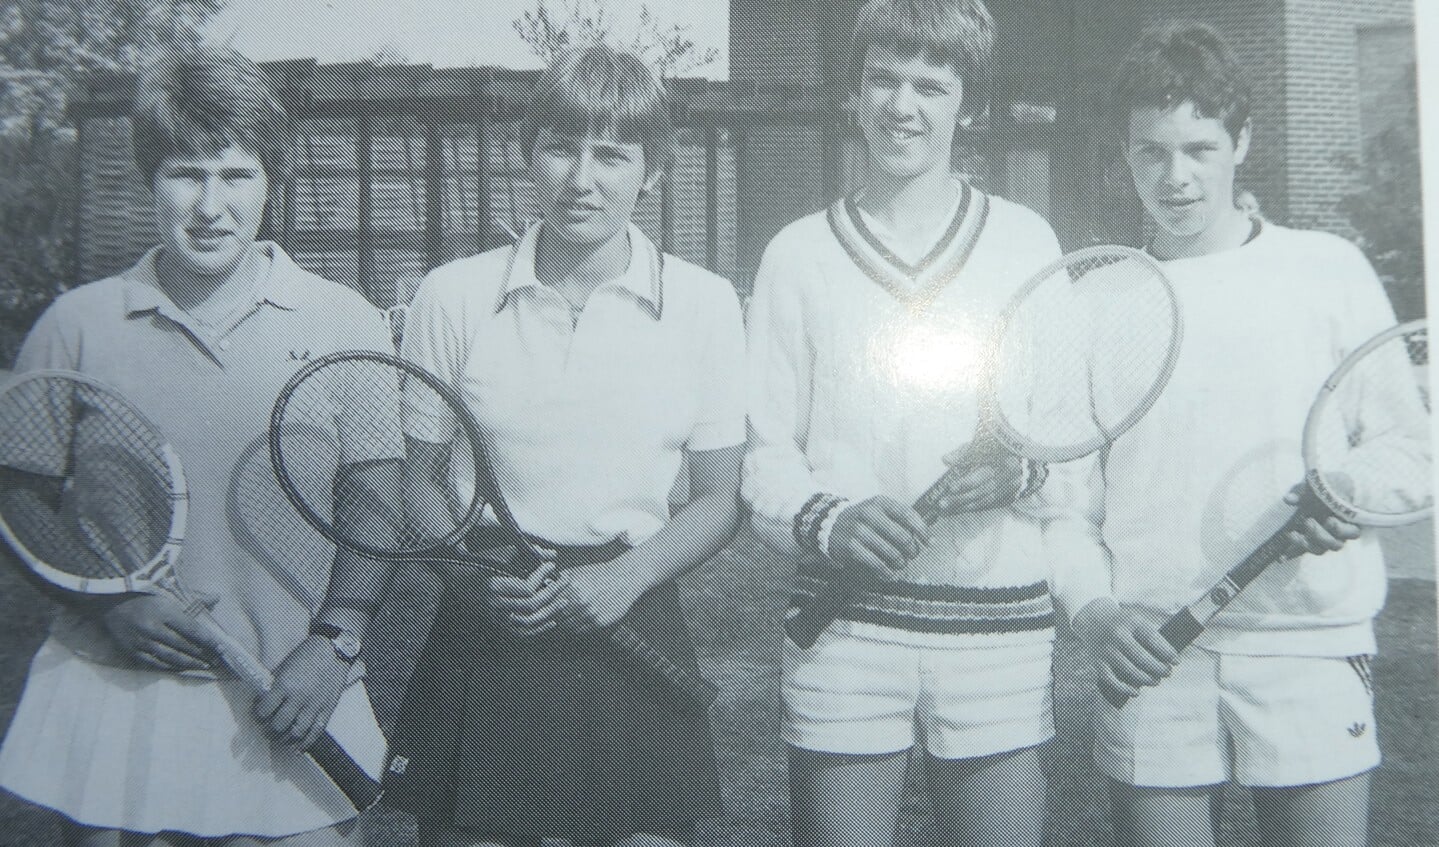 Het absolute sportieve hoogtepunt van Tennisvereniging Ruurlo gaat terug naar 1981 toen het gemengde Juniorenteam destijds bestaande uit Petra en Carin Magis, Geert Brinkerink en Pieter Alberts Nederlands kampioen werd.